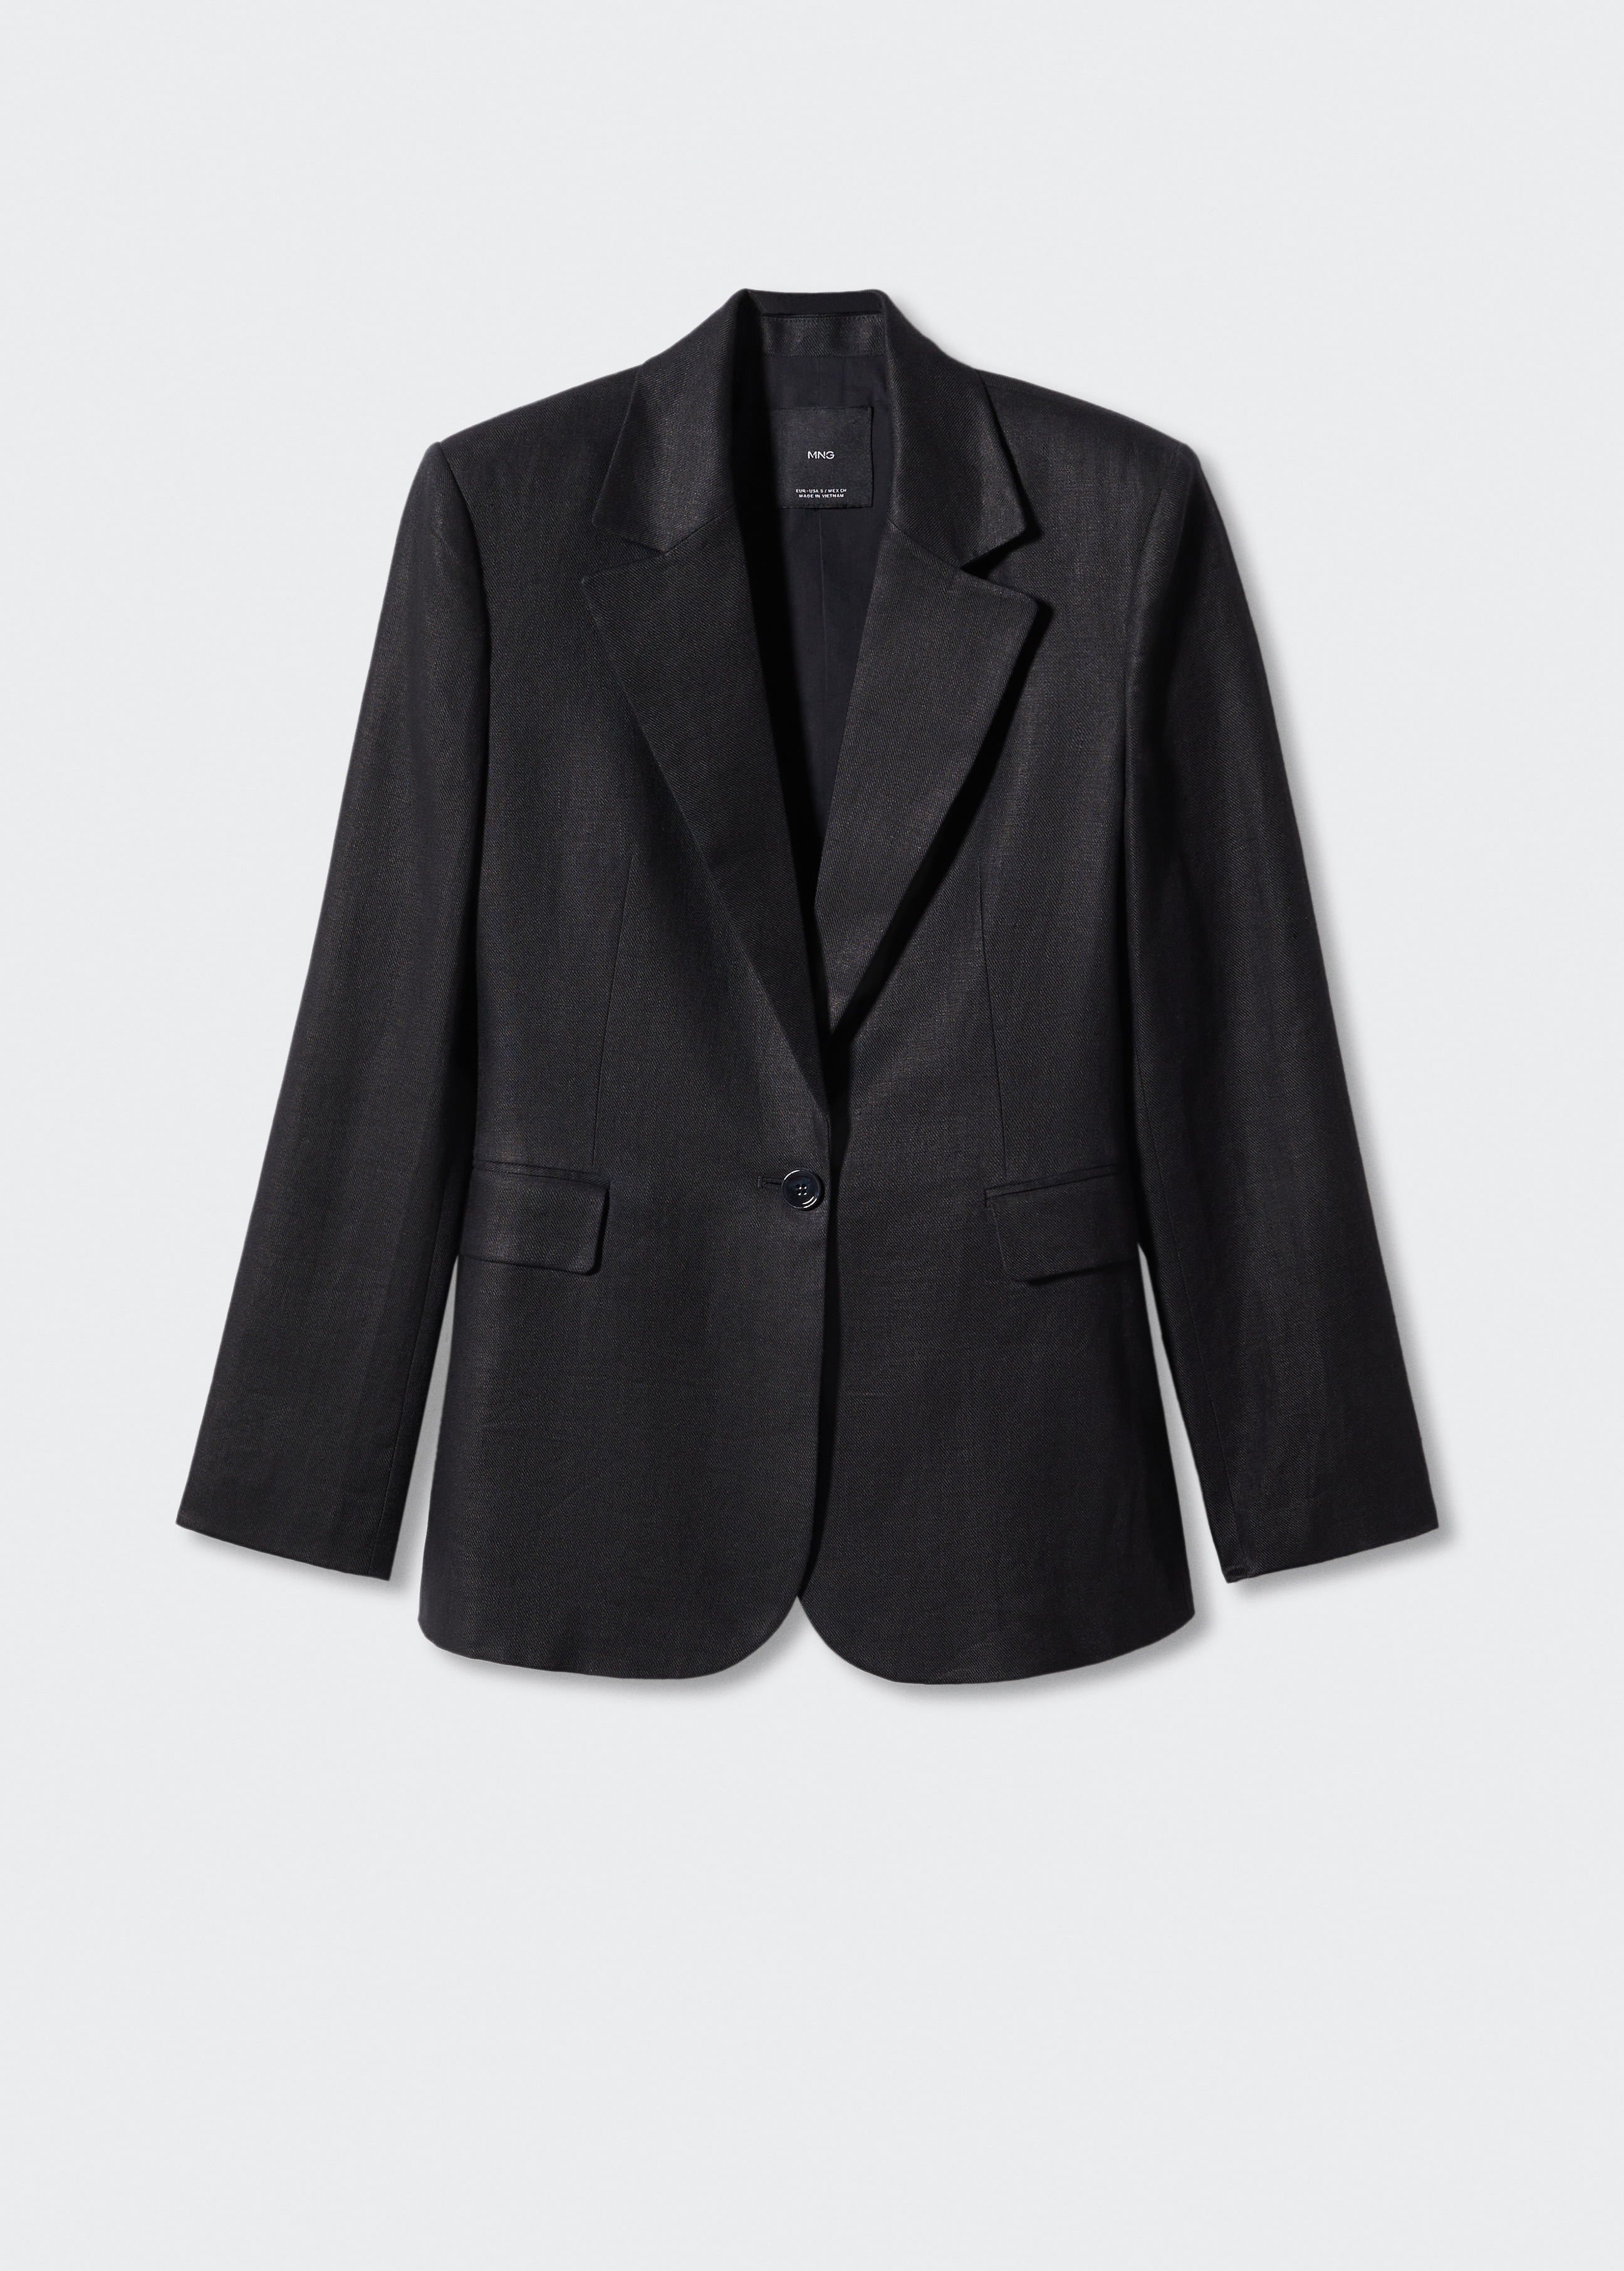 100% linen suit blazer - Article without model